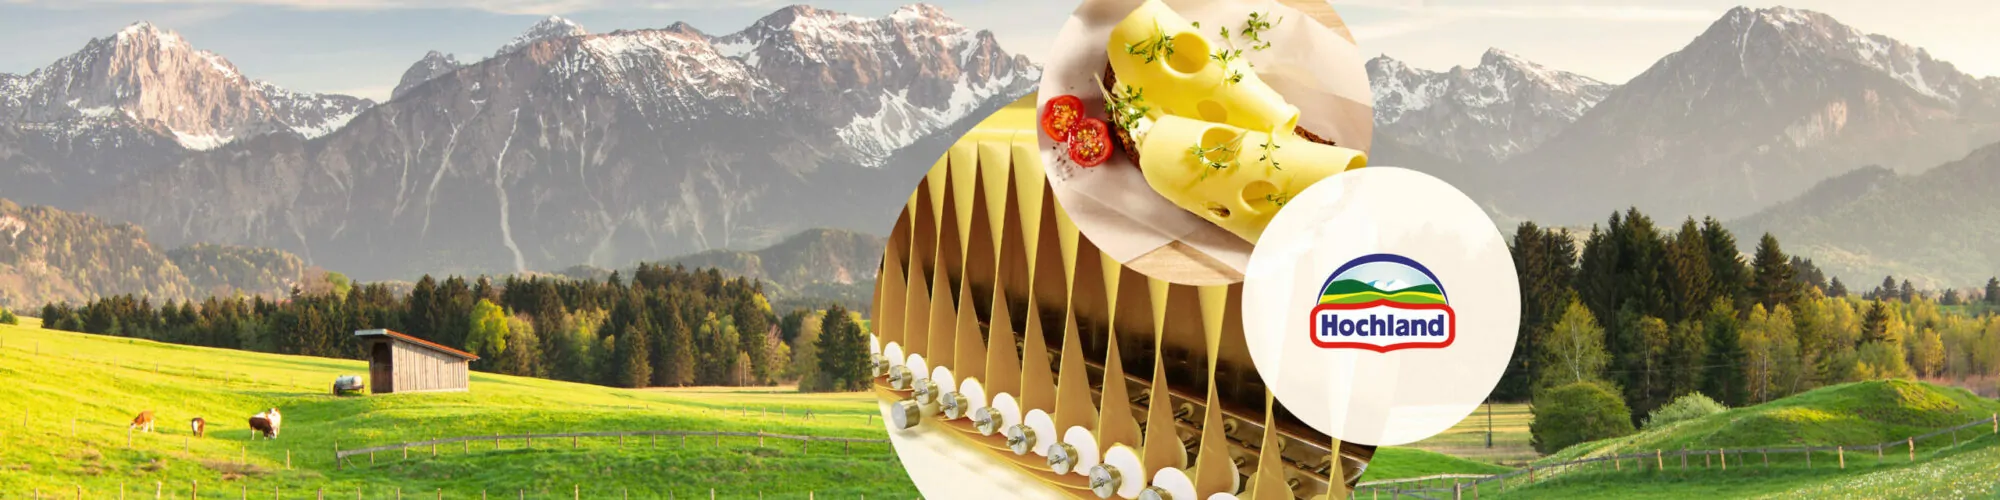 Imagem de maquinas para a produção de queijo, próximas ao logotipo da Hochland, caso de estudo da valantic: Hochland escolhe a abordagem greenfield para a migração SAP S/4HANA